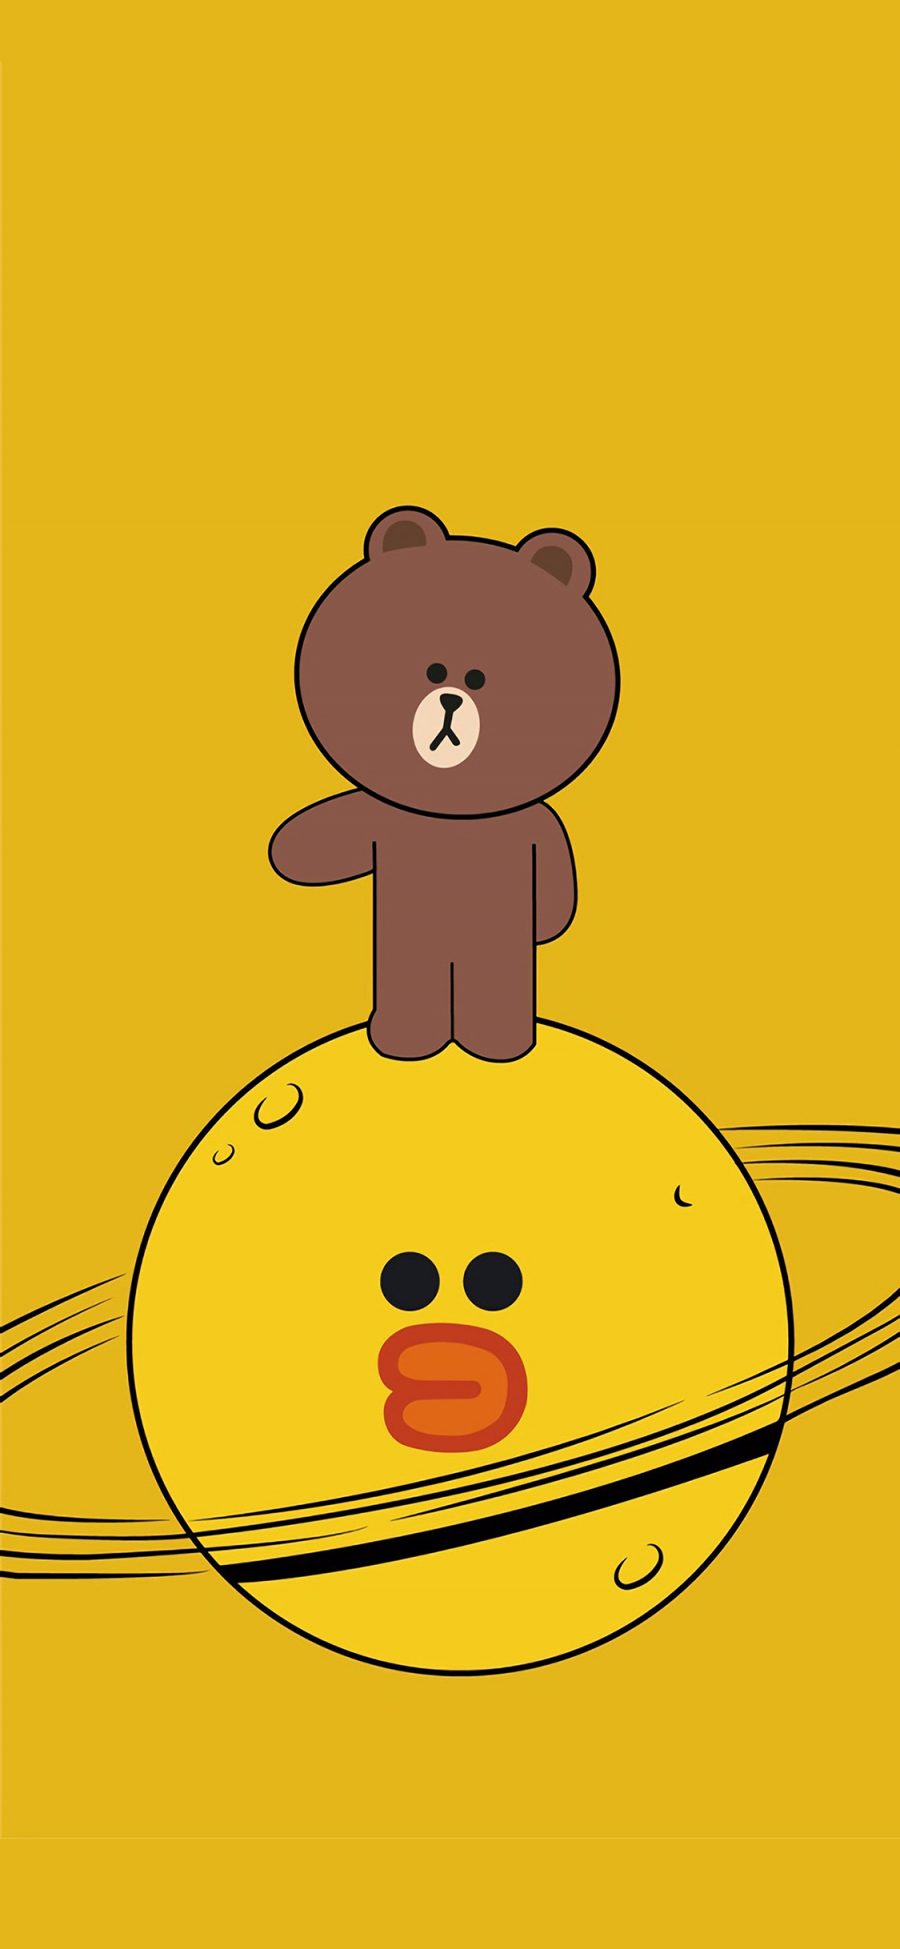 [2436×1125]linefriends 黄色 萨莉鸡 布朗熊 动画 苹果手机动漫壁纸图片